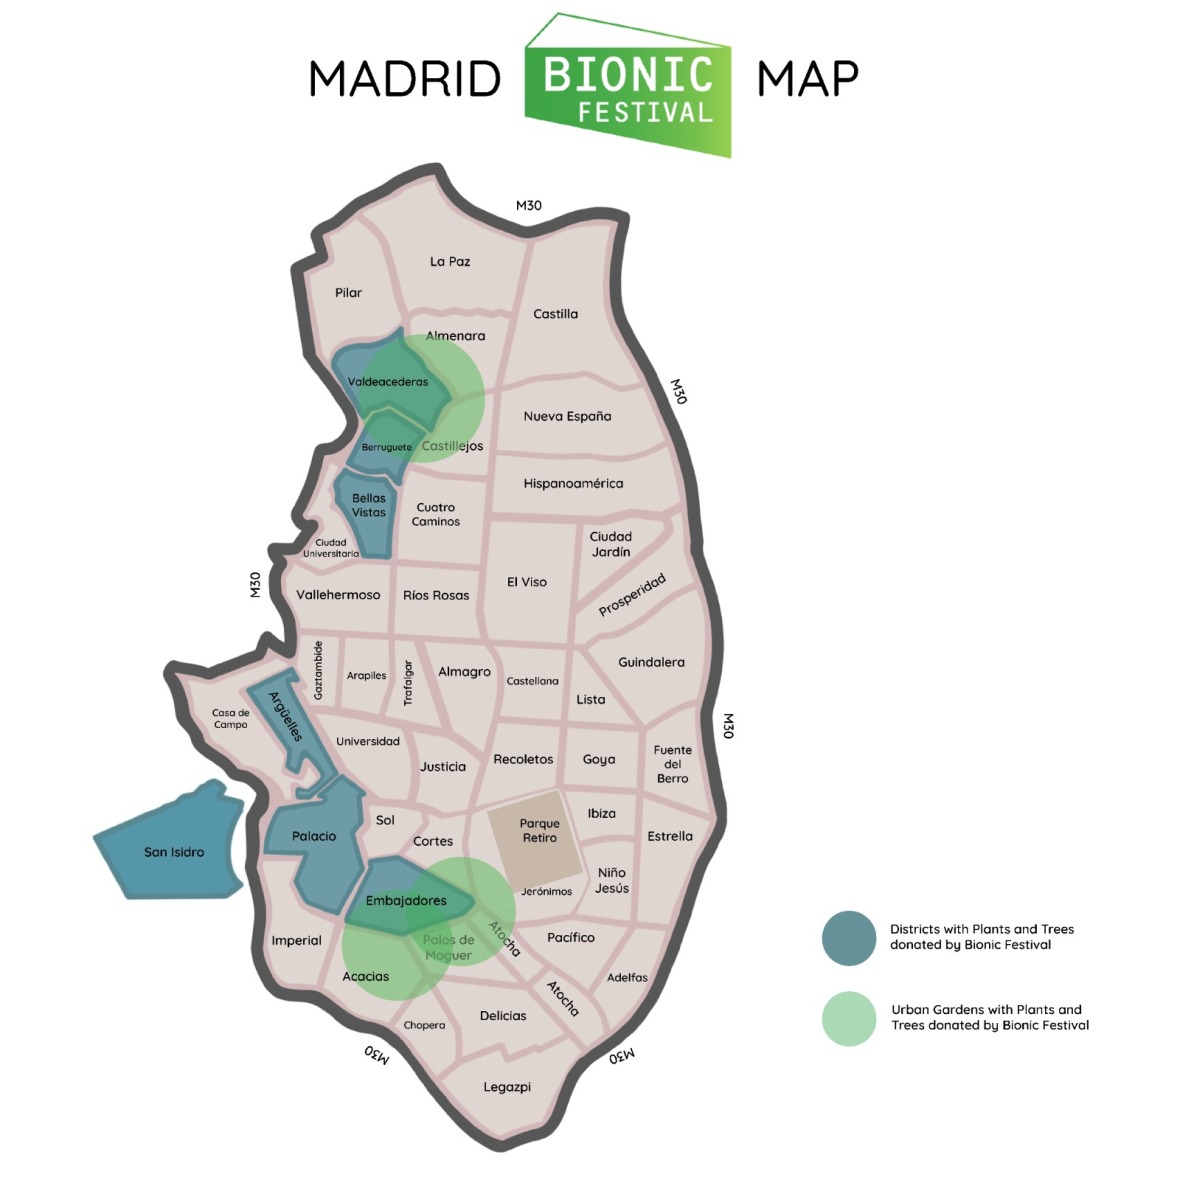 madrid_bionic_festival_map_2021